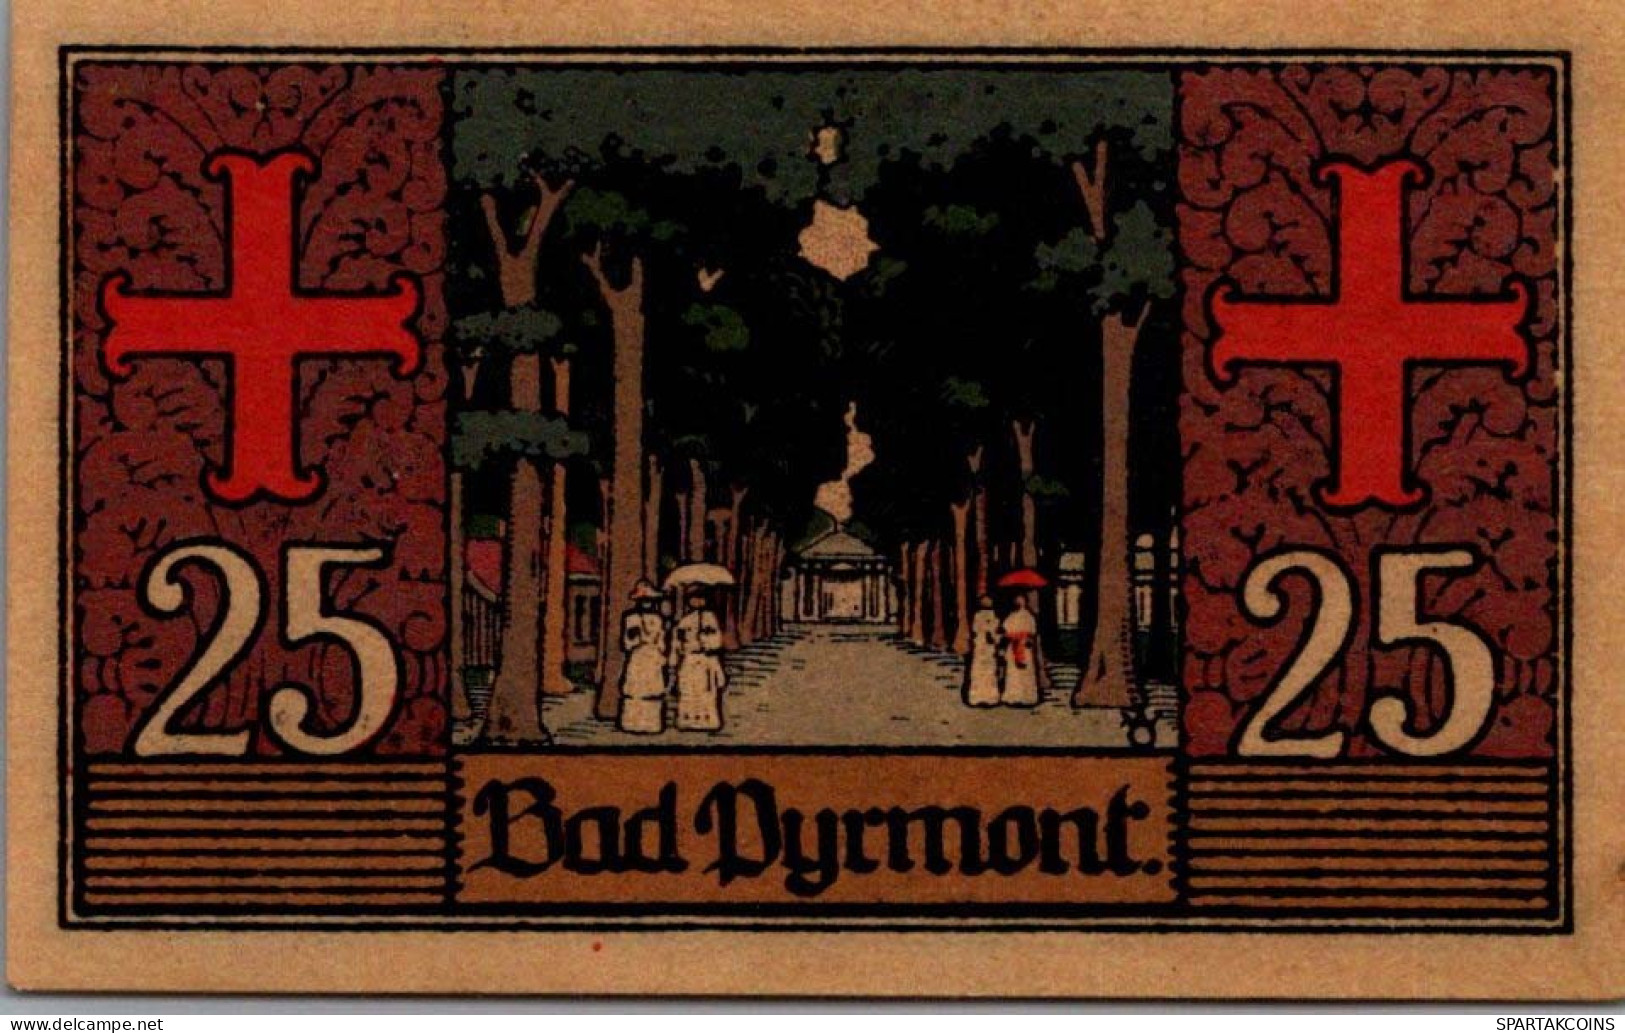 25 PFENNIG 1921 Stadt PYRMONT Waldeck-Pyrmont UNC DEUTSCHLAND Notgeld #PB801 - [11] Local Banknote Issues